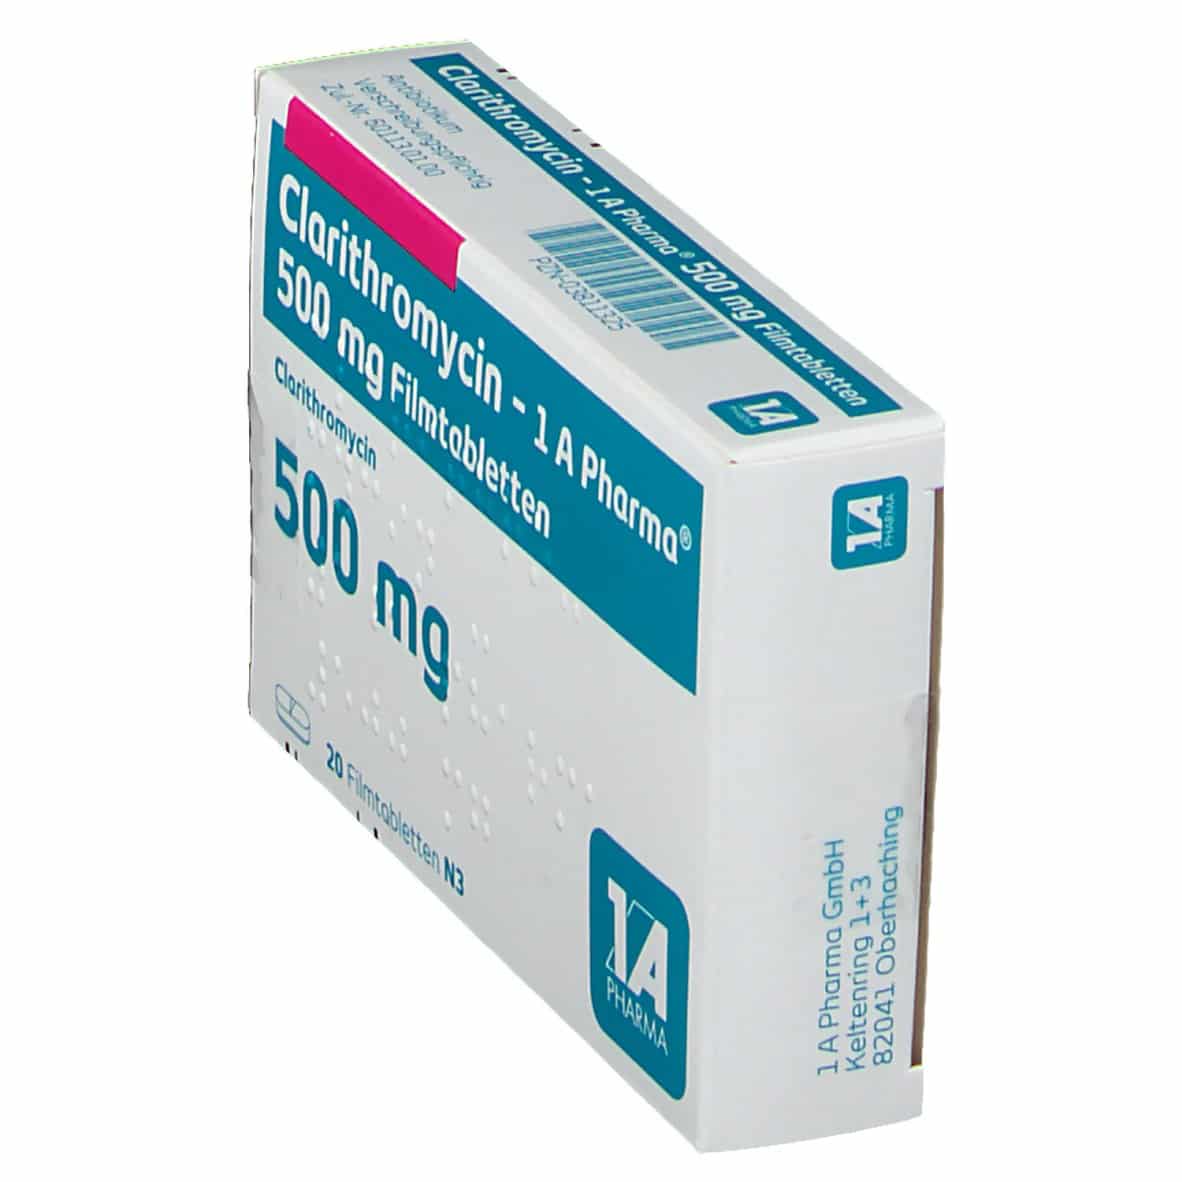 Clarithromycin 500 Mg Dose : APO